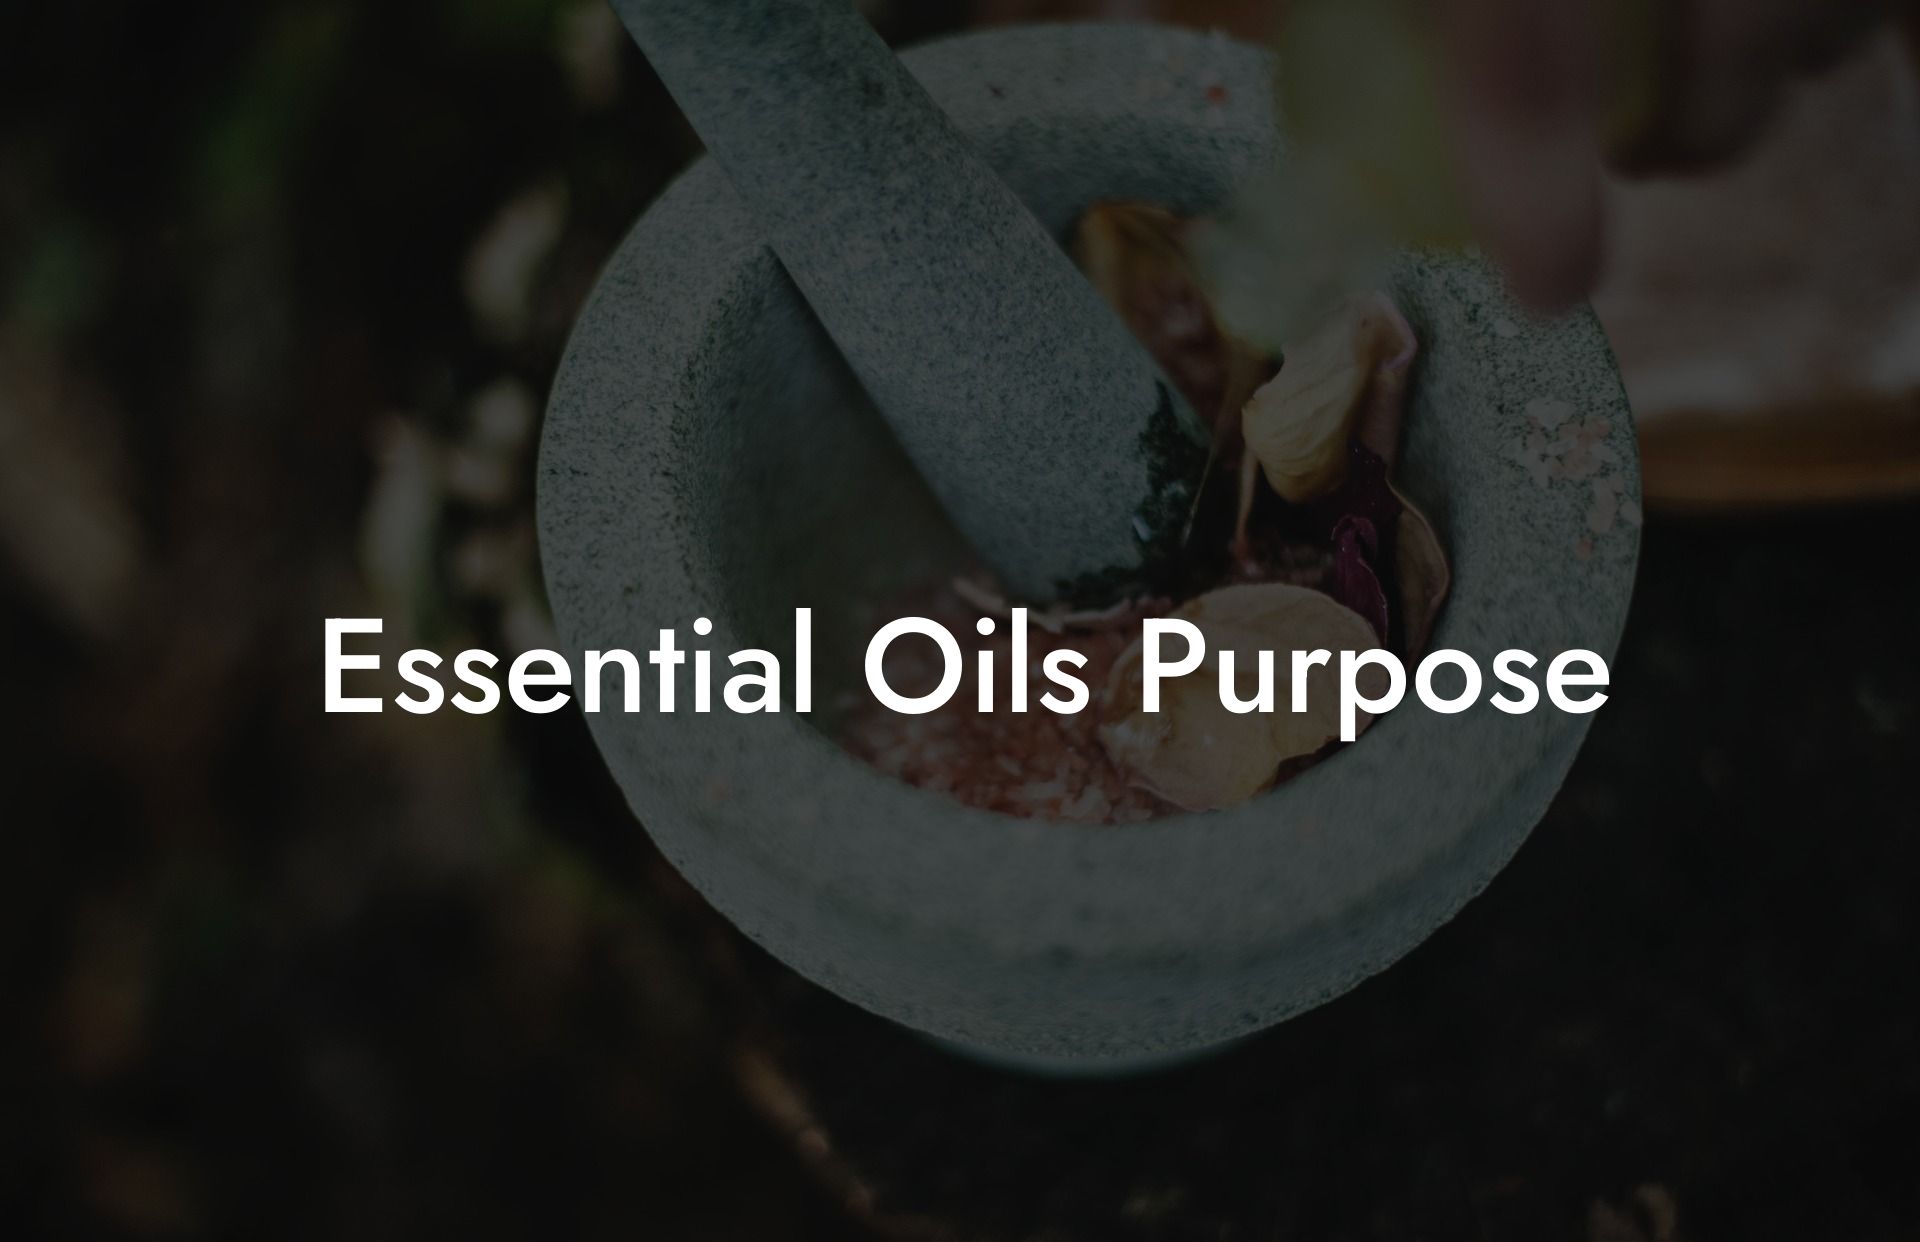 Essential Oils Purpose